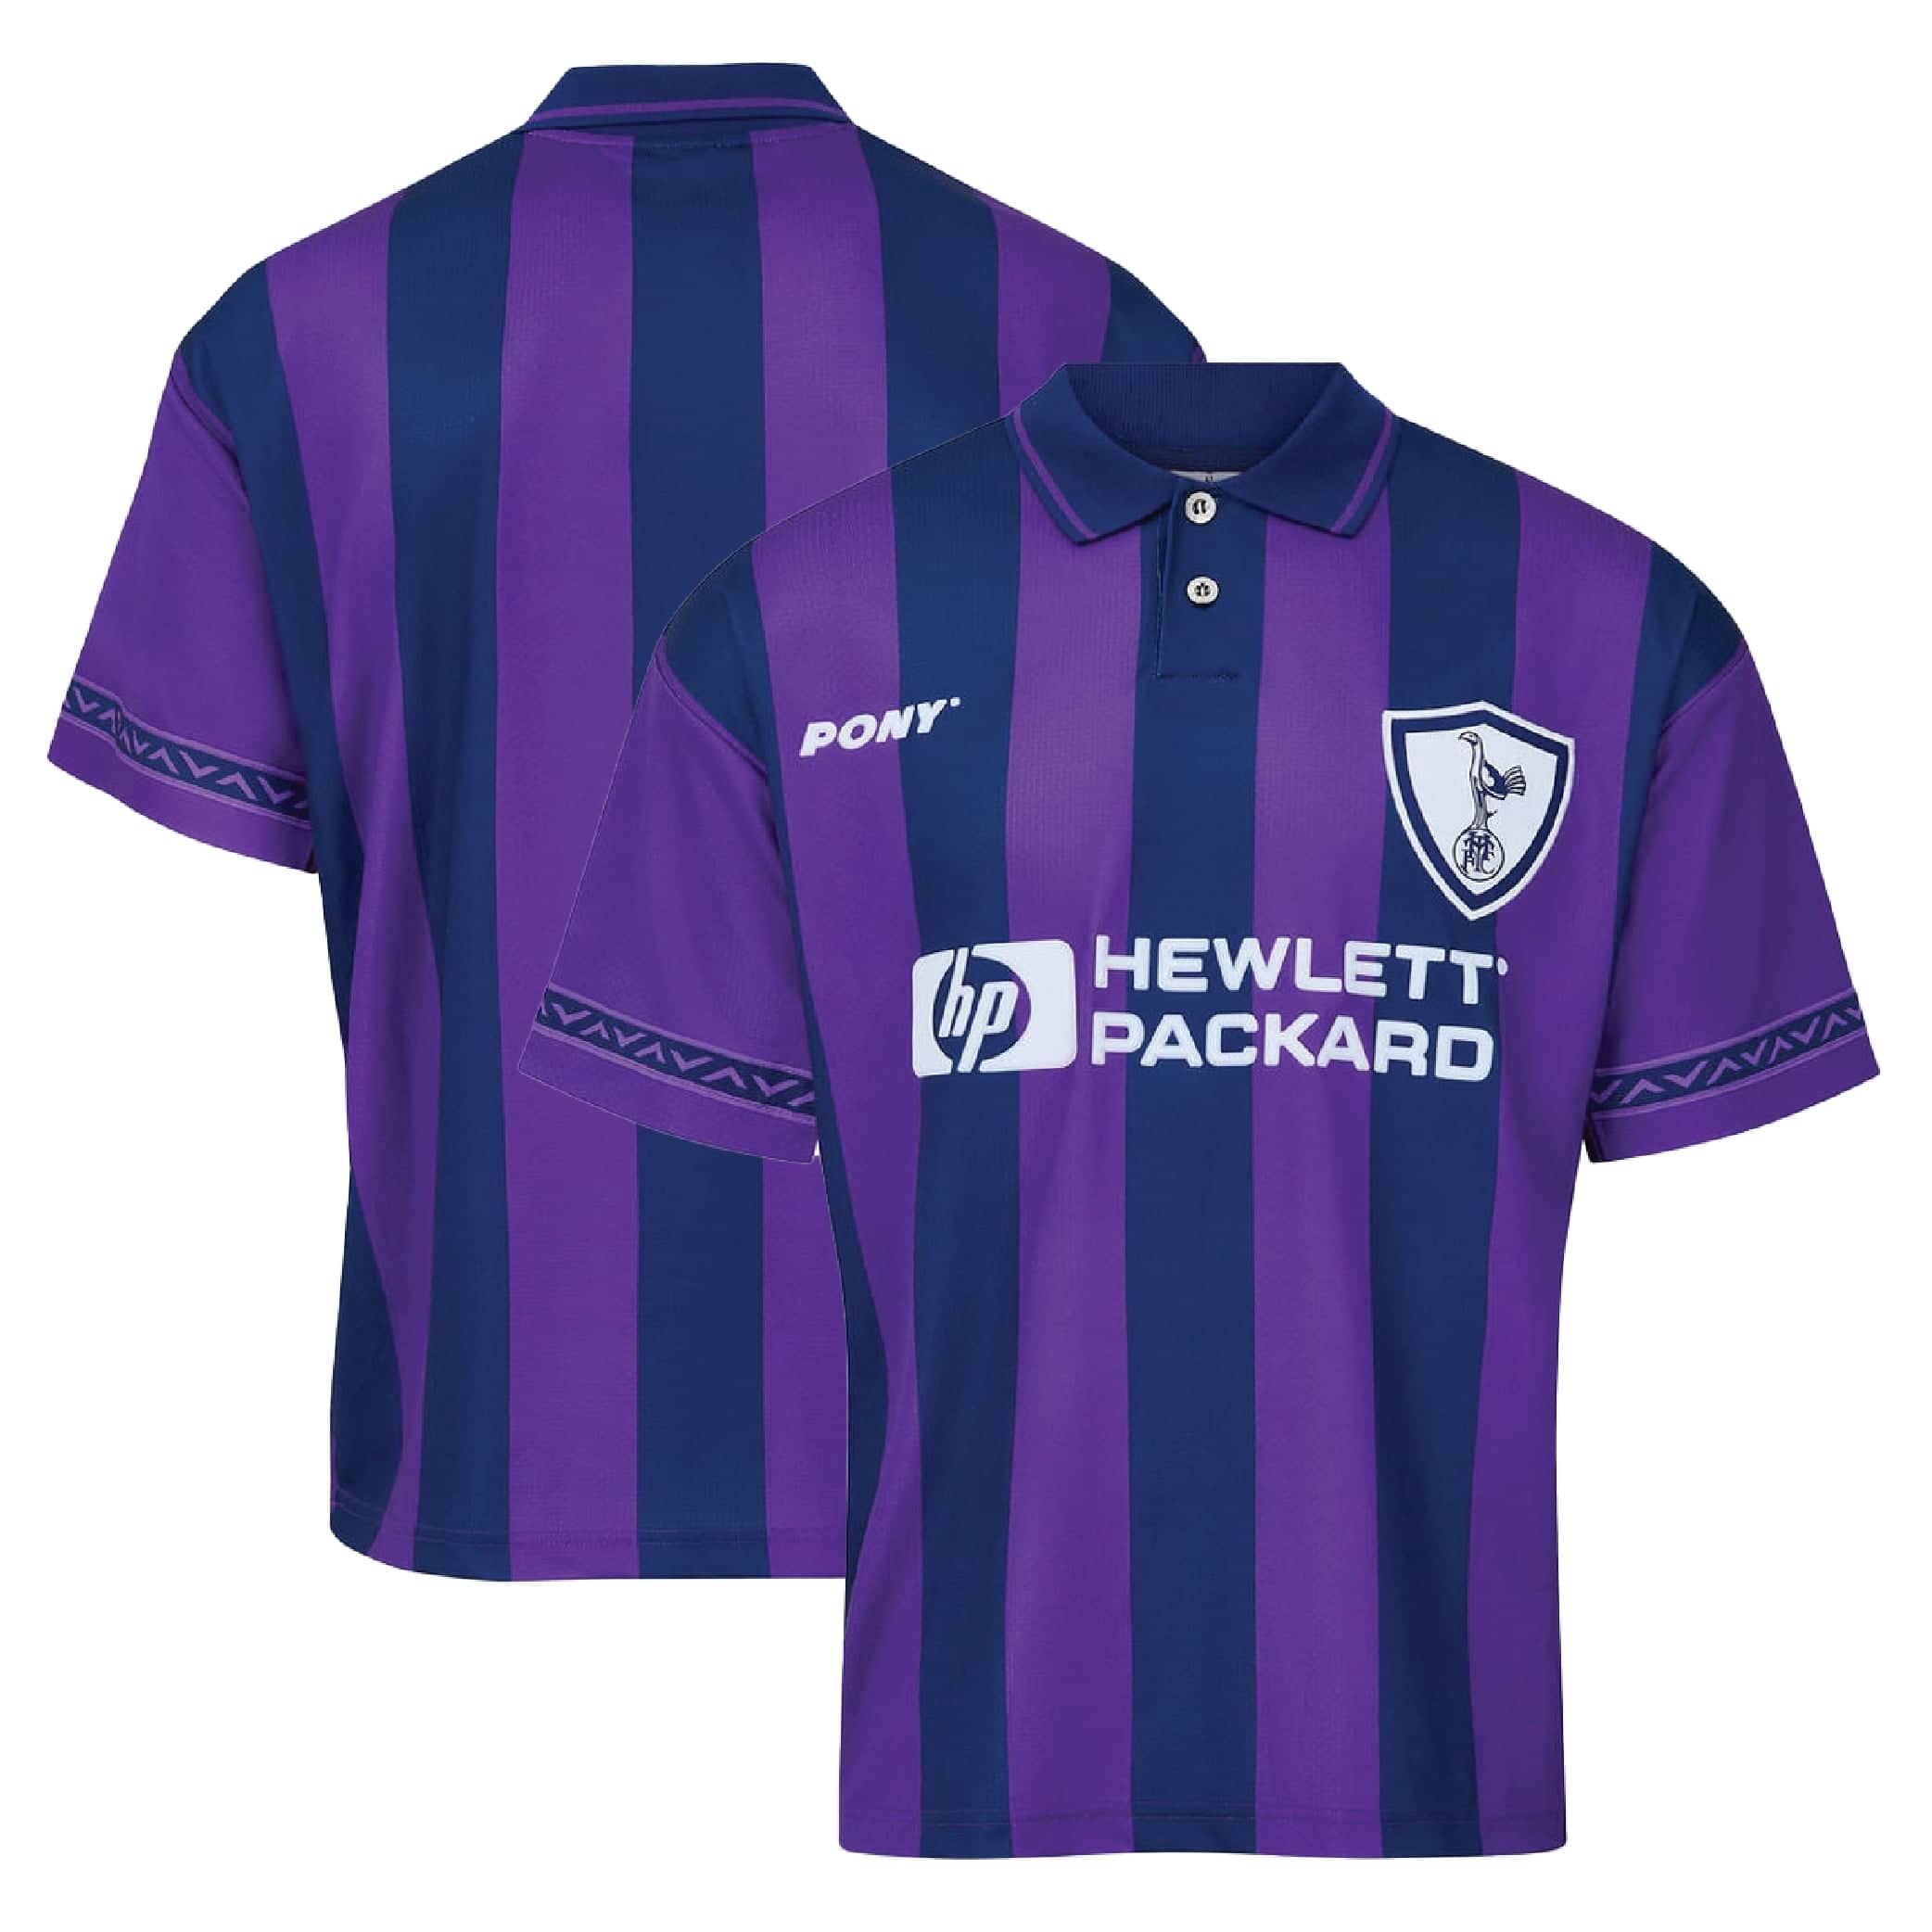 Tottenham Hotspur Home football shirt 1997 - 1999. Sponsored by Hewlett  Packard